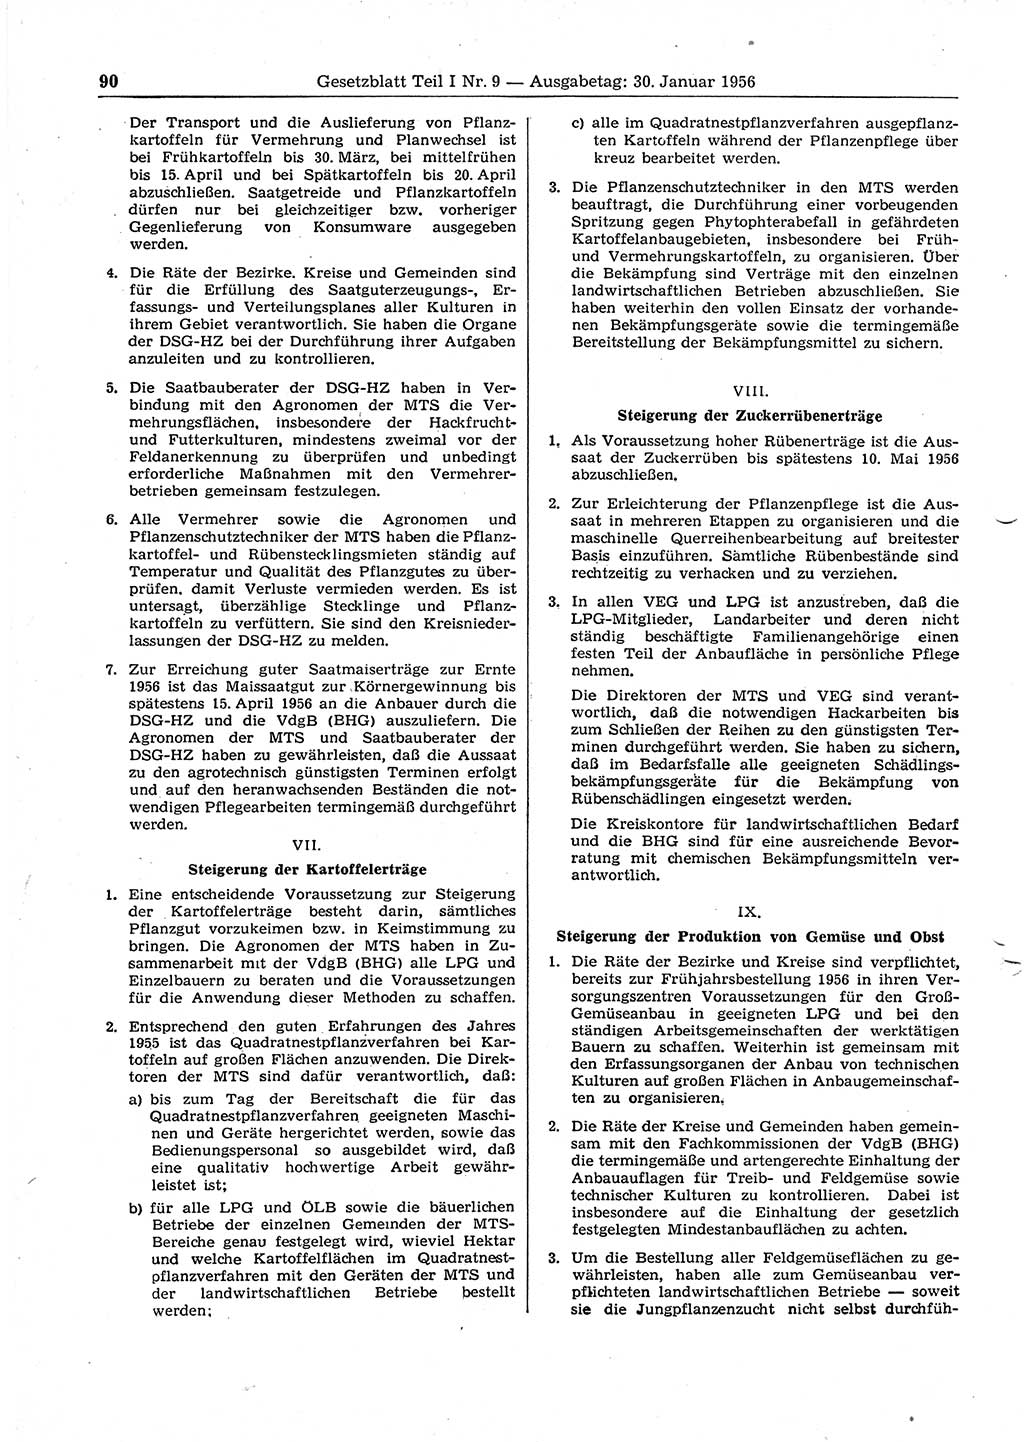 Gesetzblatt (GBl.) der Deutschen Demokratischen Republik (DDR) Teil Ⅰ 1956, Seite 90 (GBl. DDR Ⅰ 1956, S. 90)